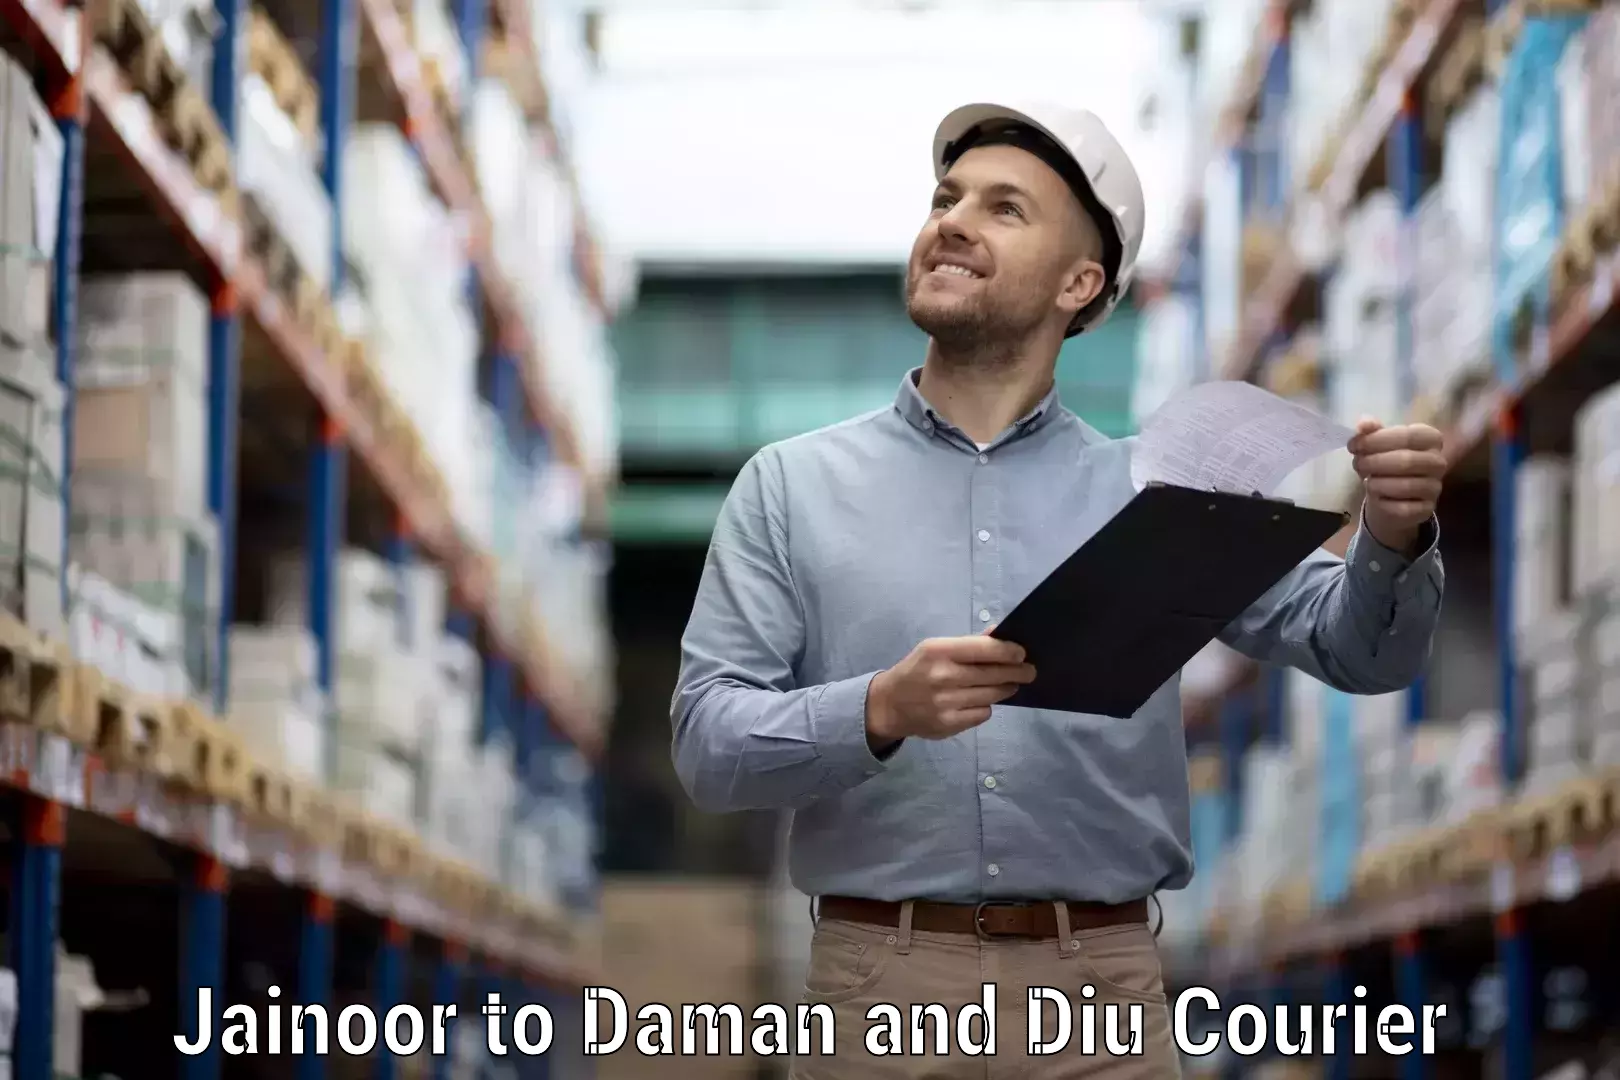 Secure shipping methods Jainoor to Diu